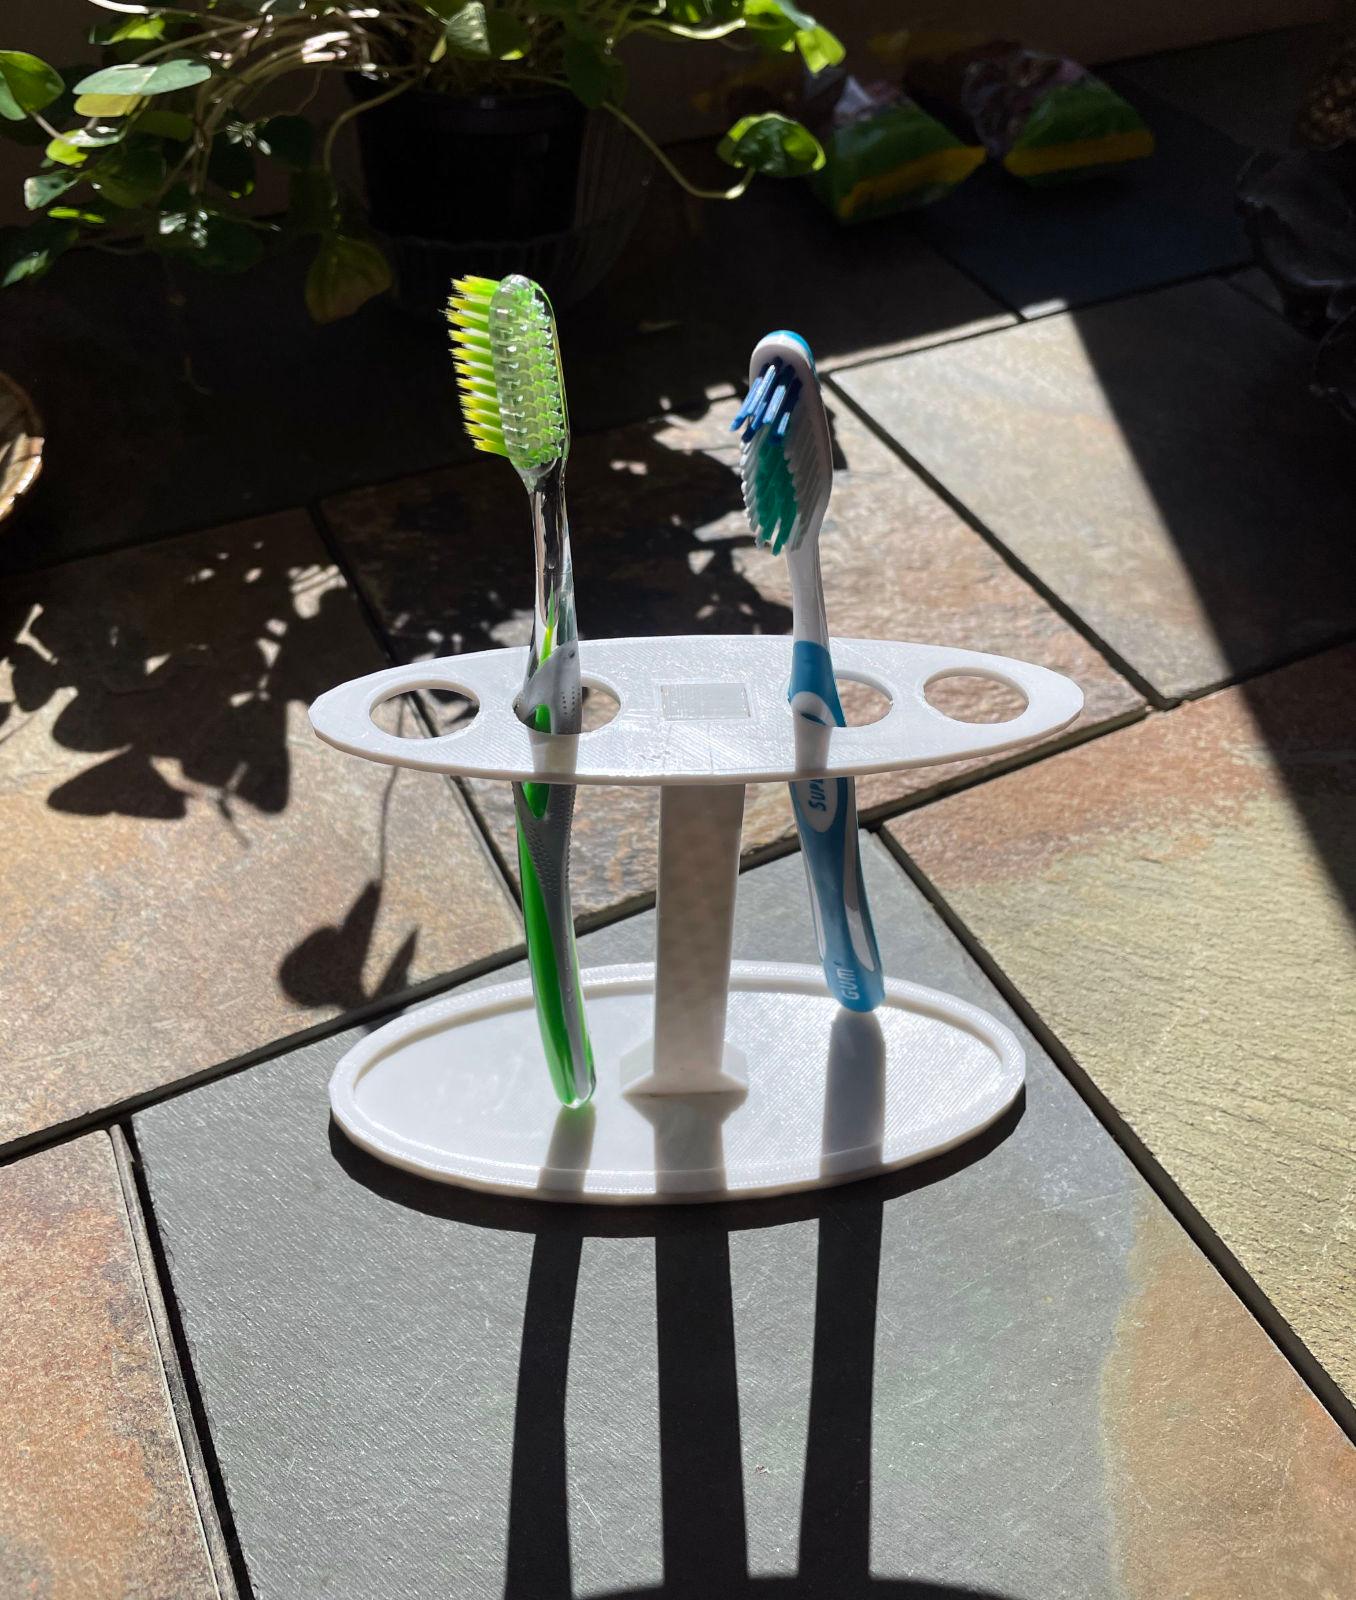 Travel toothbrush holder 3d model